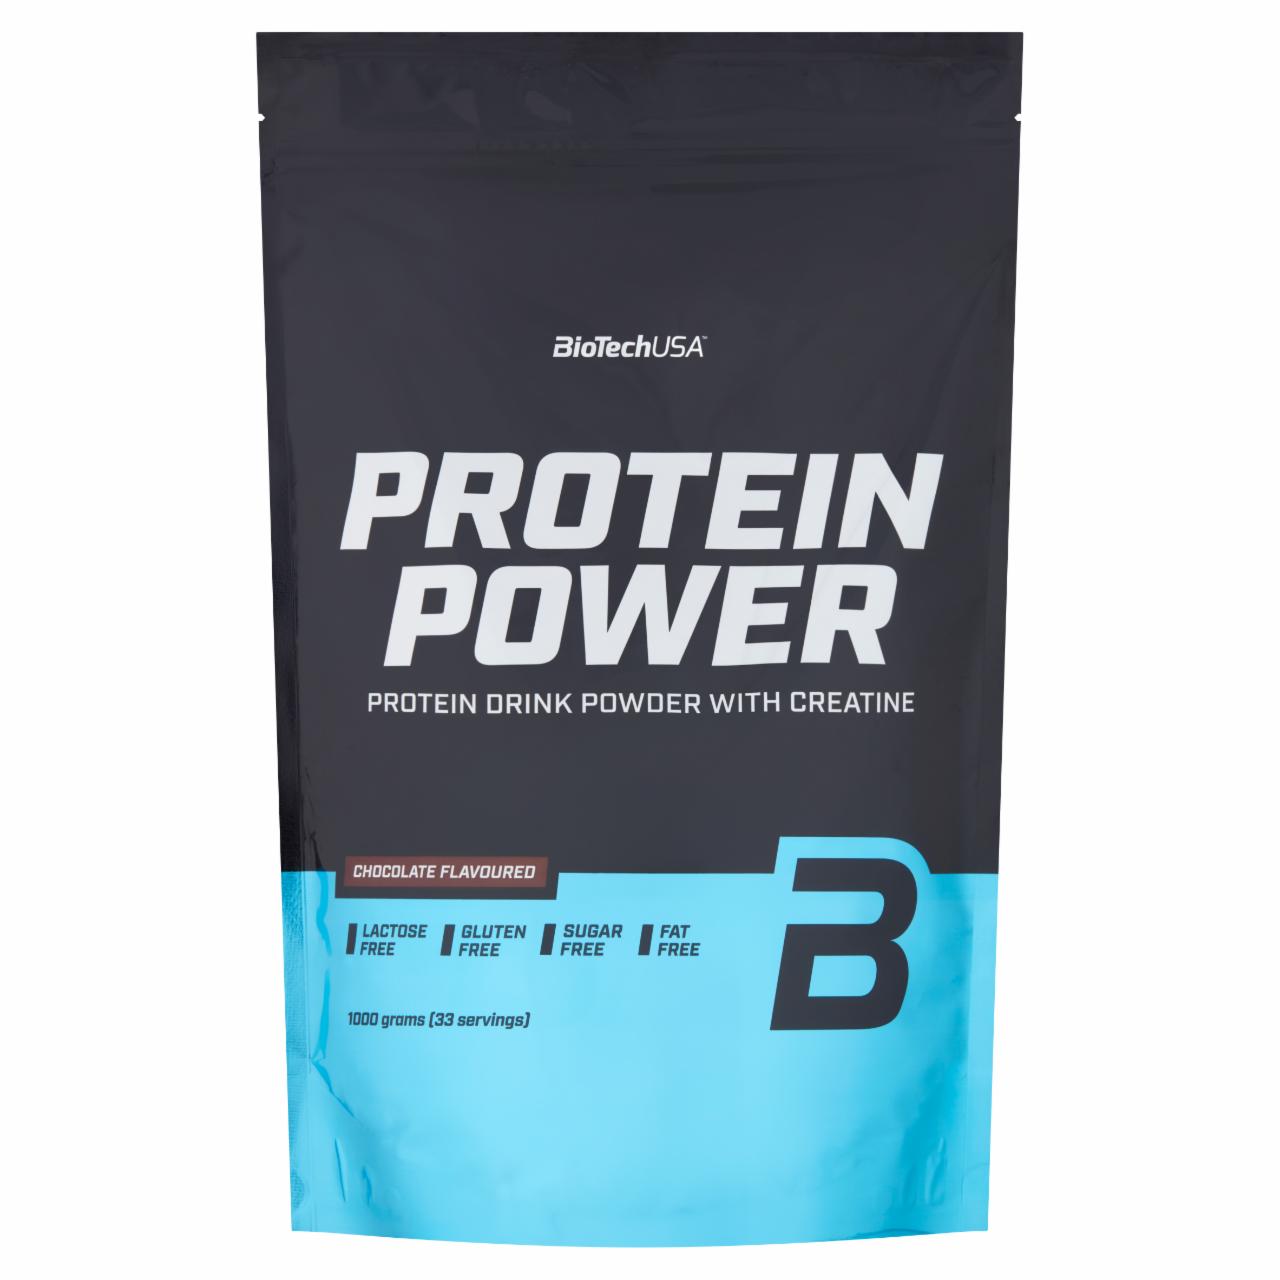 Képek - Protein Power csokoládé ízű fehérje italpor kreatinnal és édesítőszerekkel BioTechUSA